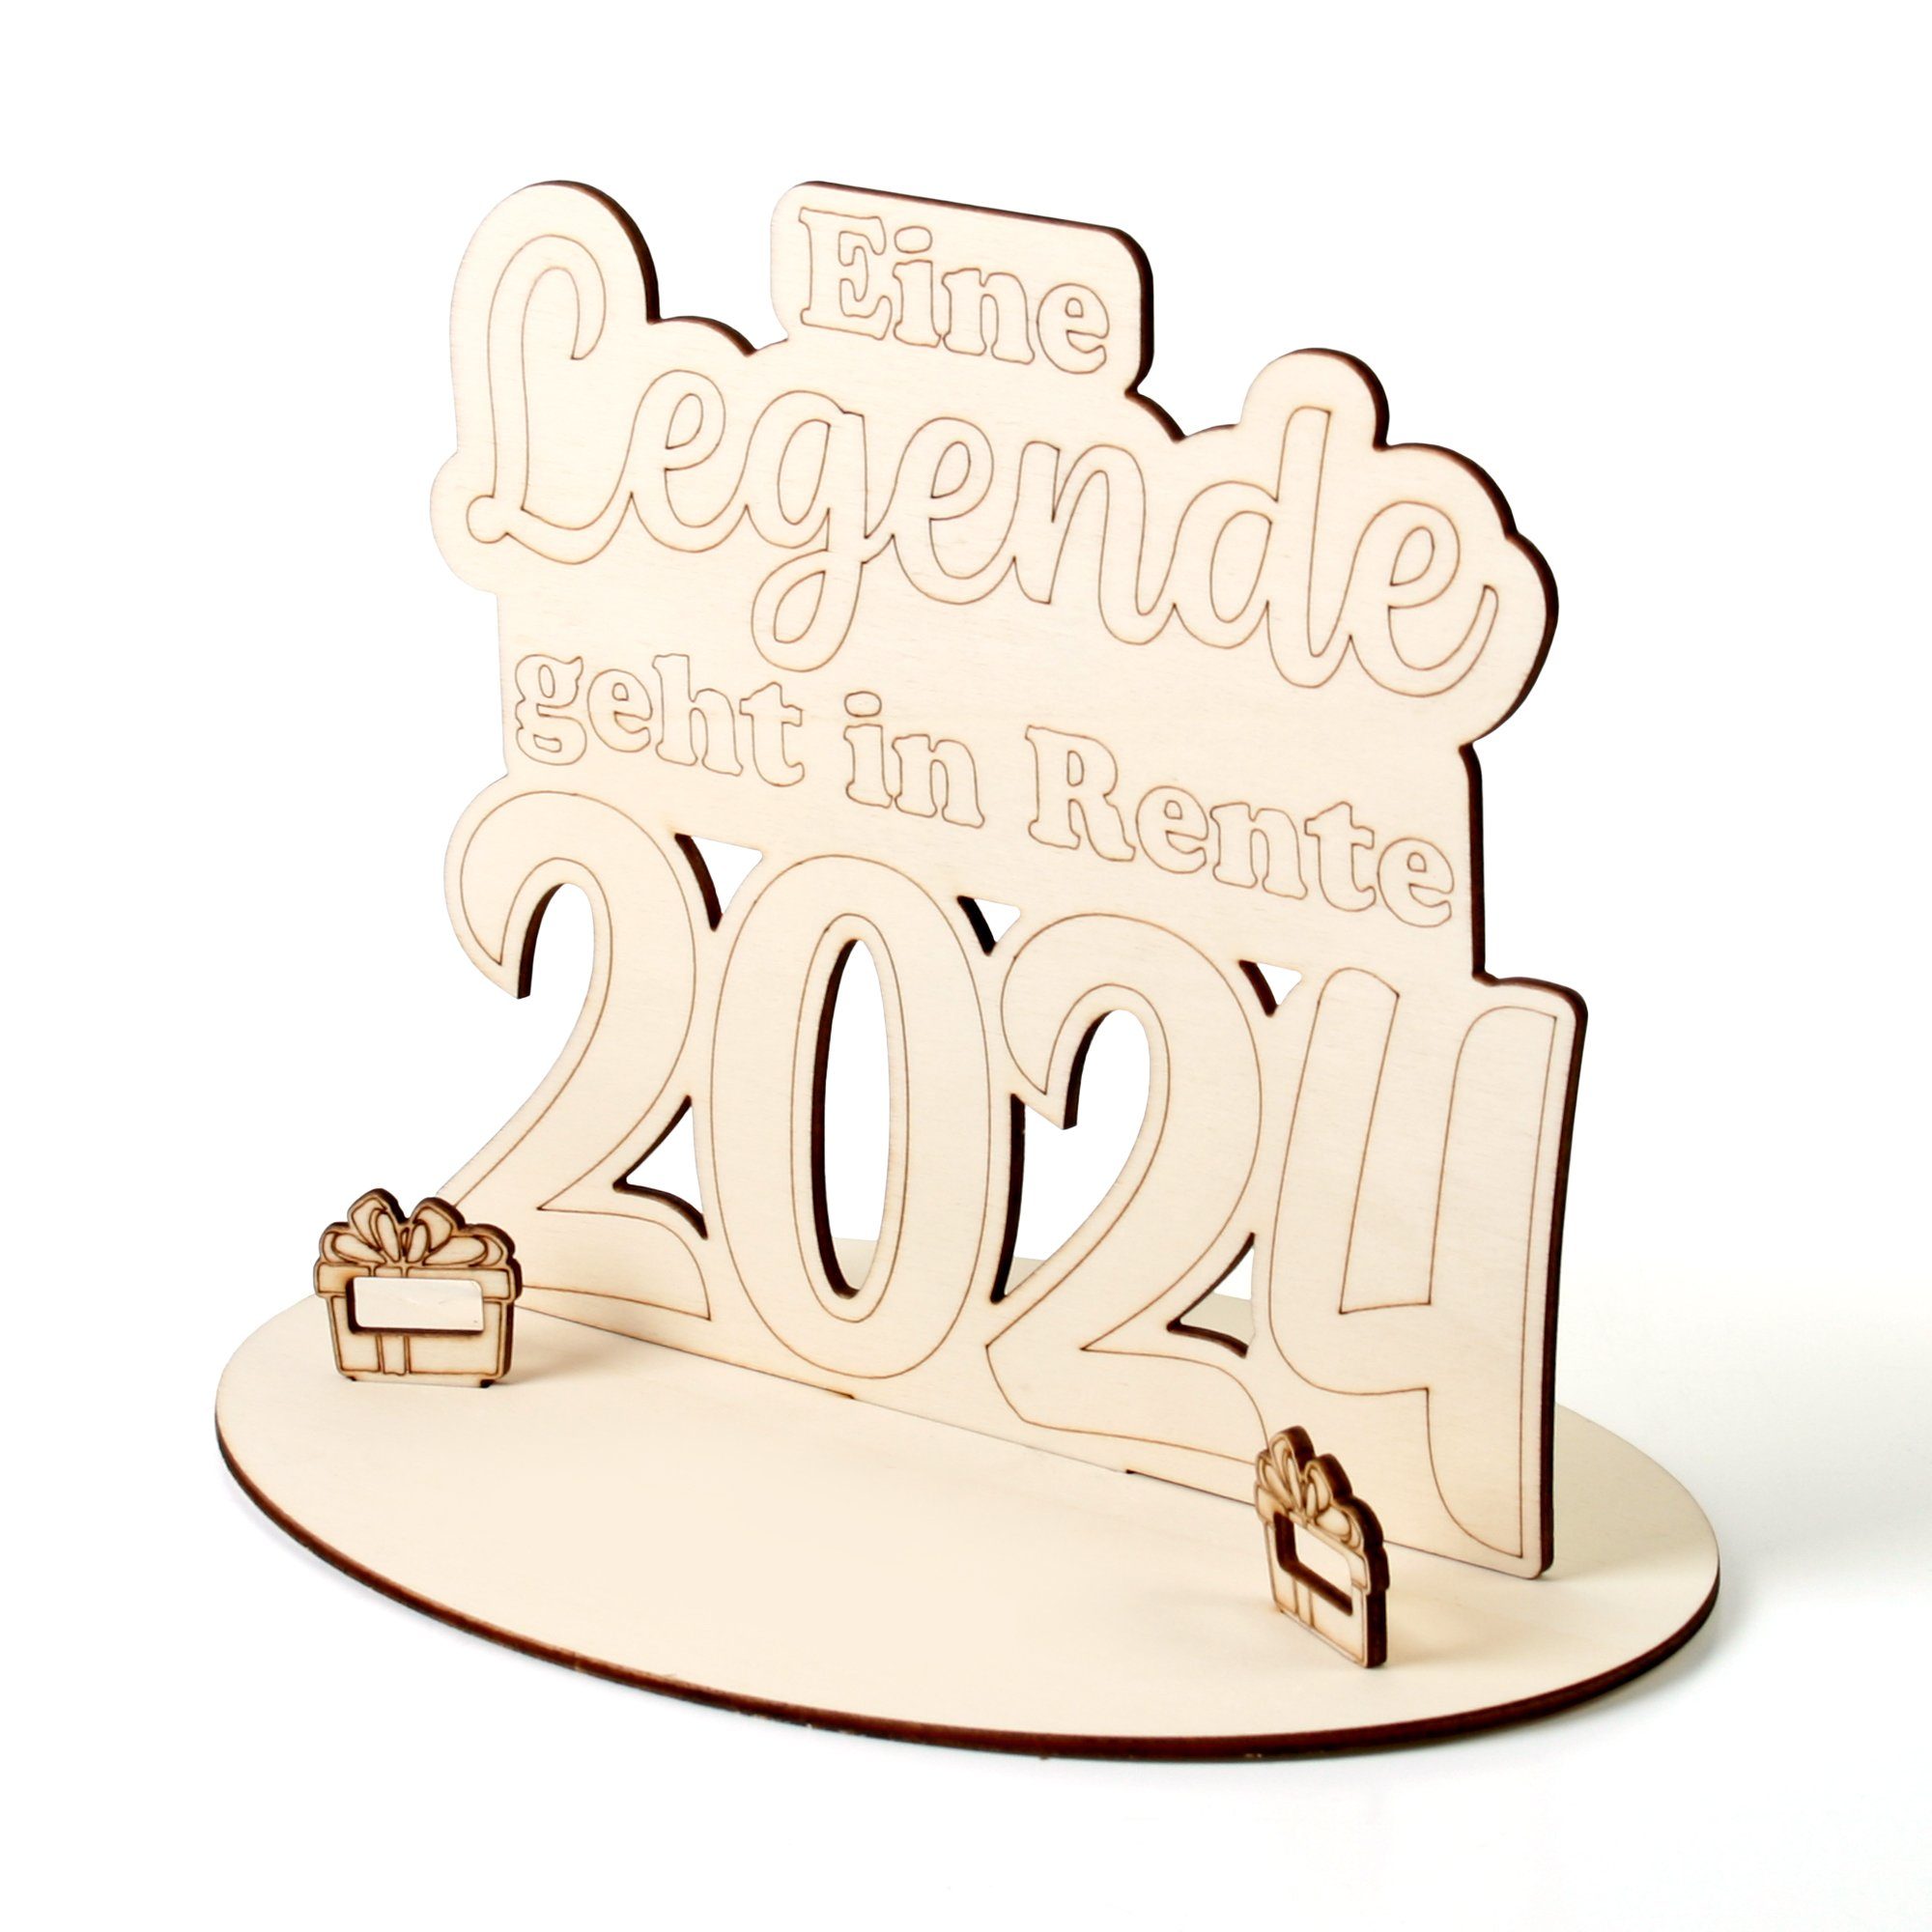 Holz, Kreative Feder Rente originelle 3D Geldgeschenk-Deko Glückwunschkarte aus aus zur Origineller Holz Geschenk-Aufsteller